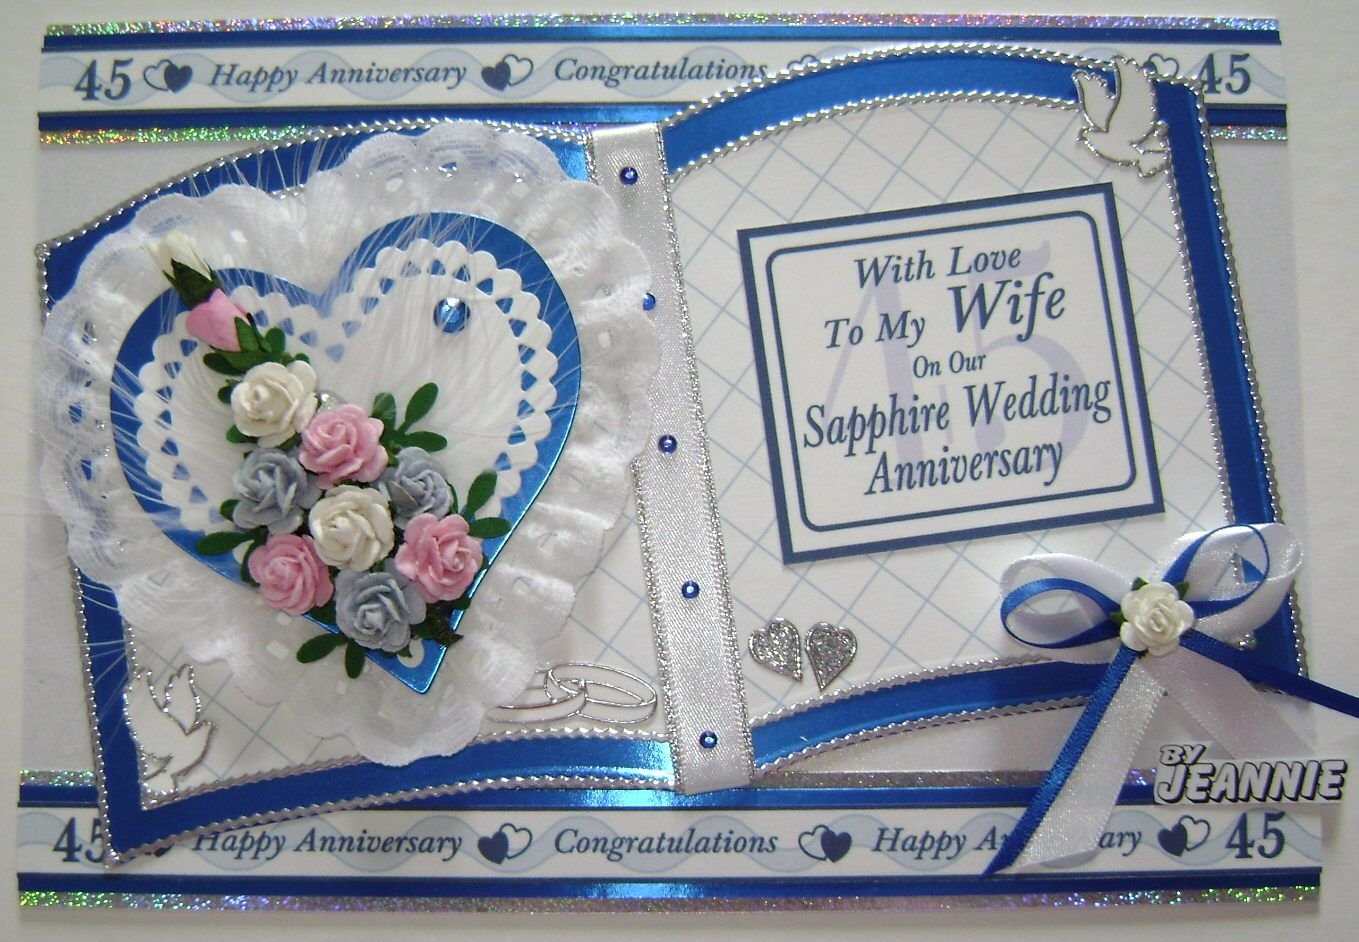 Поздравления 45 лет свадьбы совместной жизни. Поздравляю с сапфировой свадьбой. С днём свадьбы 45 лет поздравления. Поздравление с годовщиной свадьбы 45 лет. Поздравление с сапфировой свадьбой 45 лет.